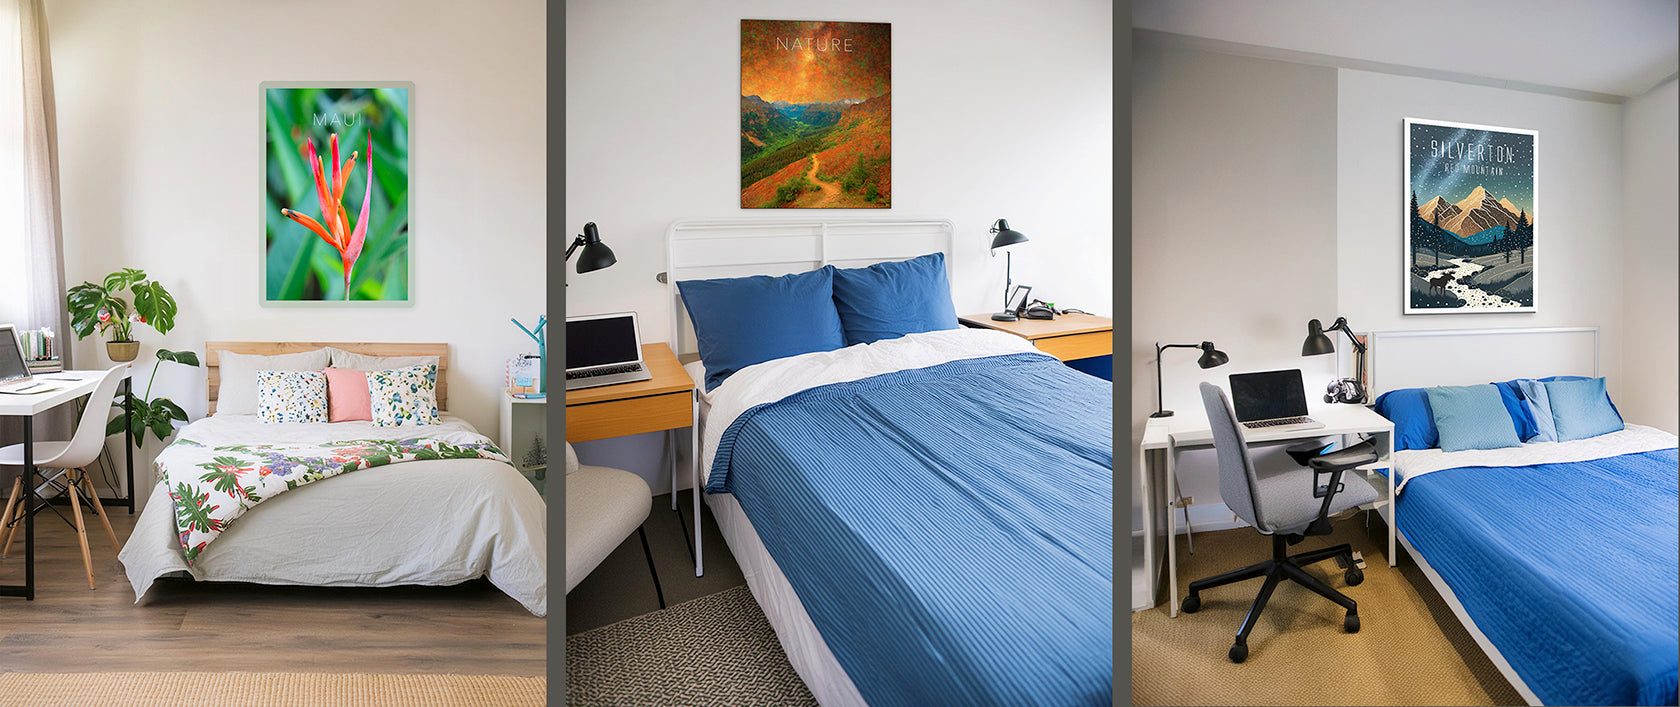 Download Poster Art Bedroom Examples